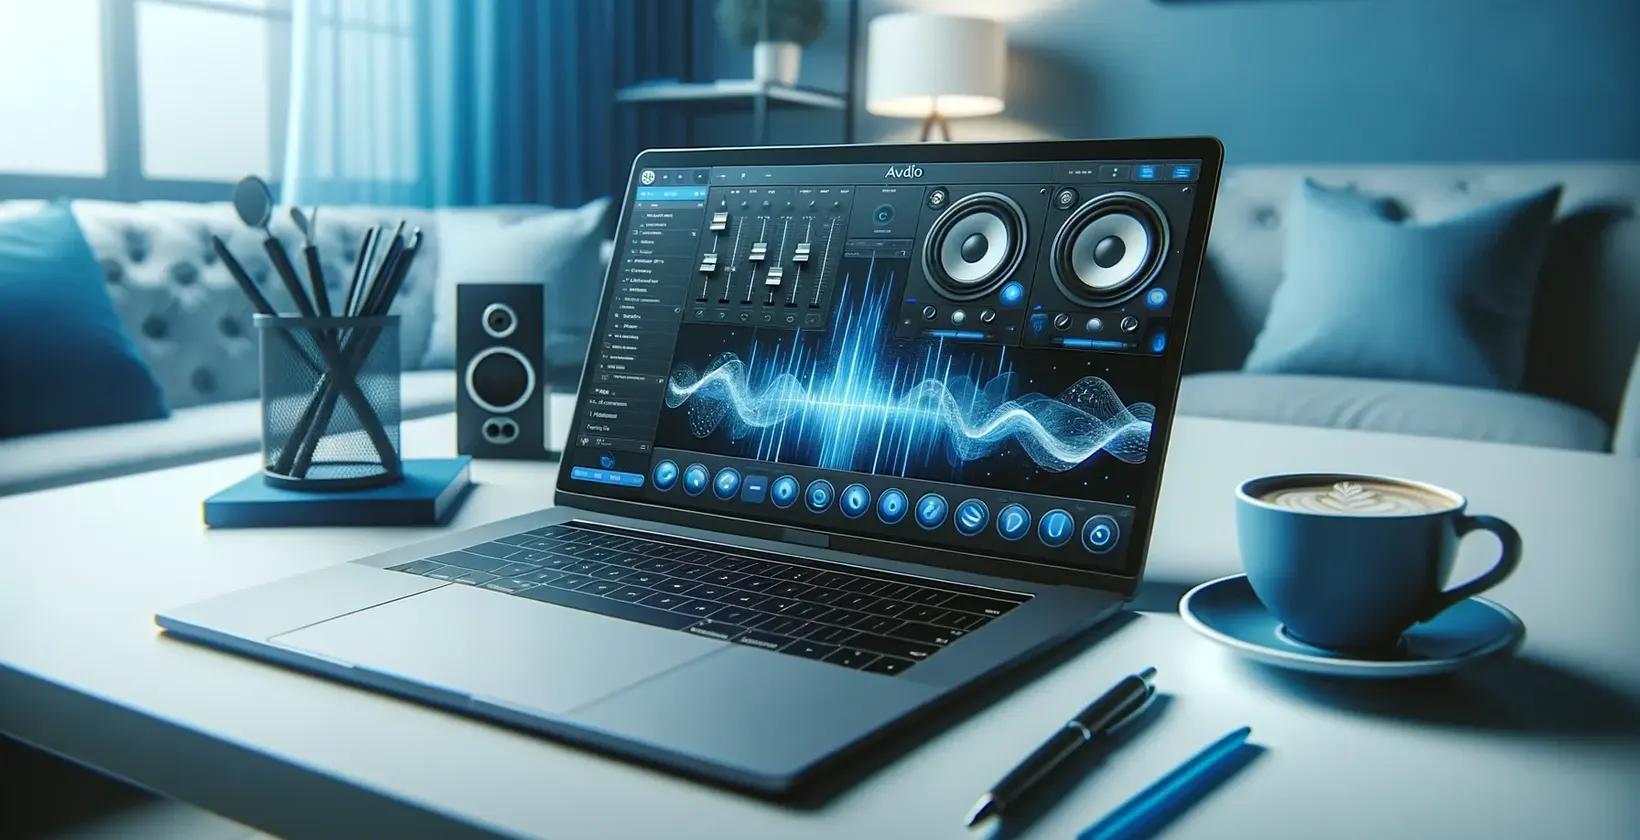 Laptop menampilkan tag speaker dan bentuk gelombang di dekat kopi, mengisyaratkan transkripsi audio.